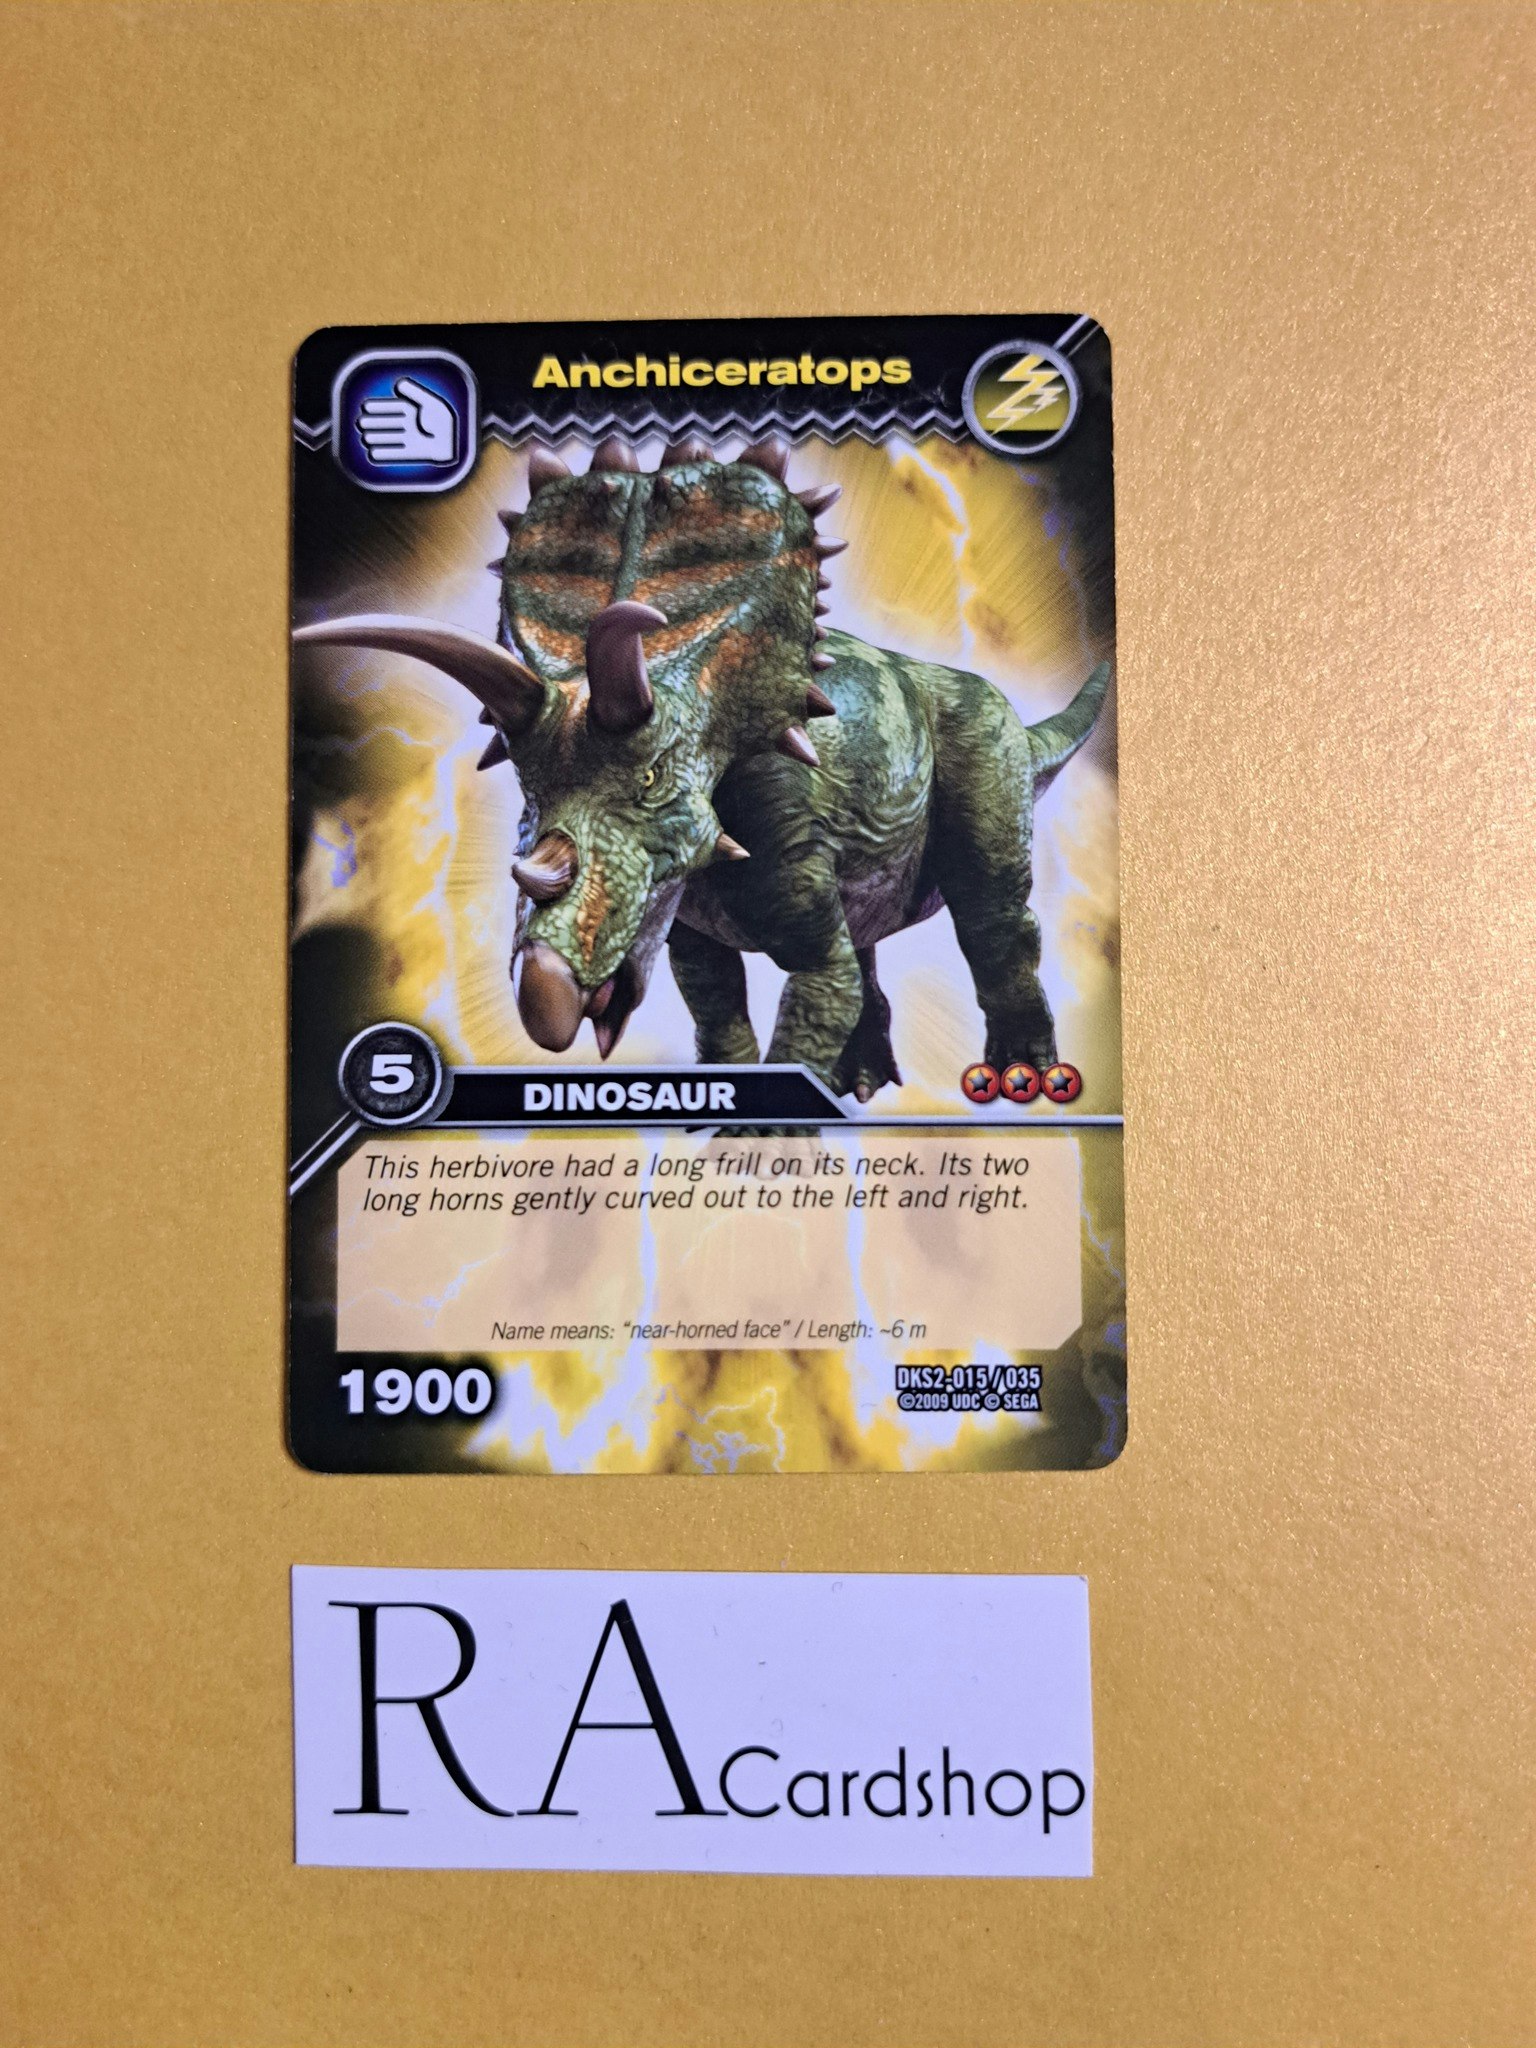 Anchiceratops DKS2-015/035 Dinosaur King